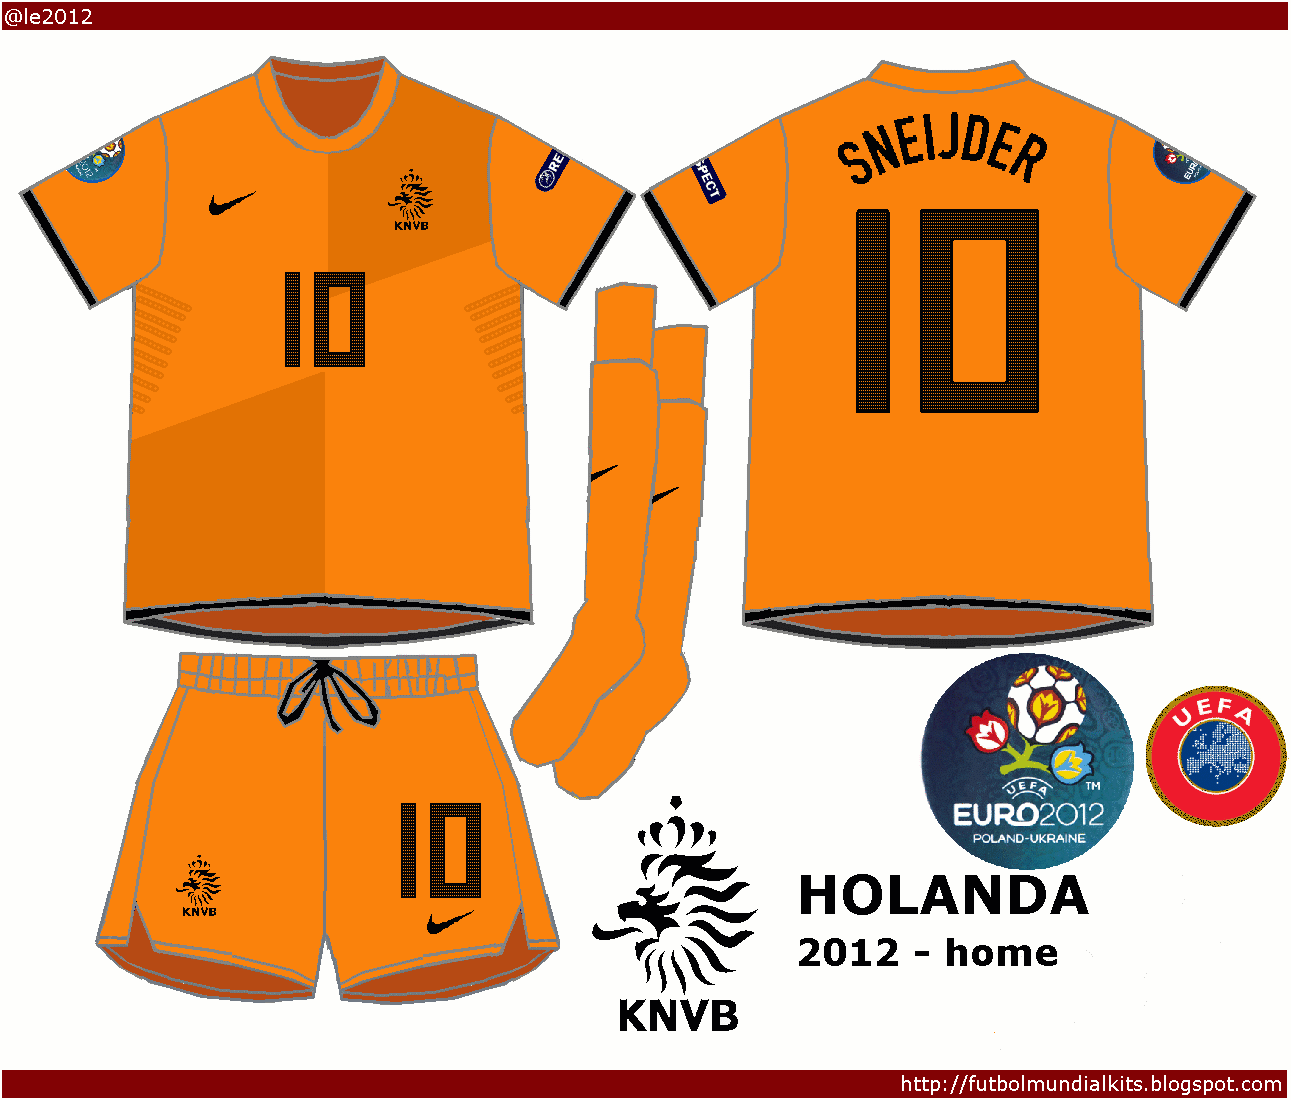 Fútbol Mundial Kits - Uruguay: Selección de Holanda - 2012 (eurocopa)